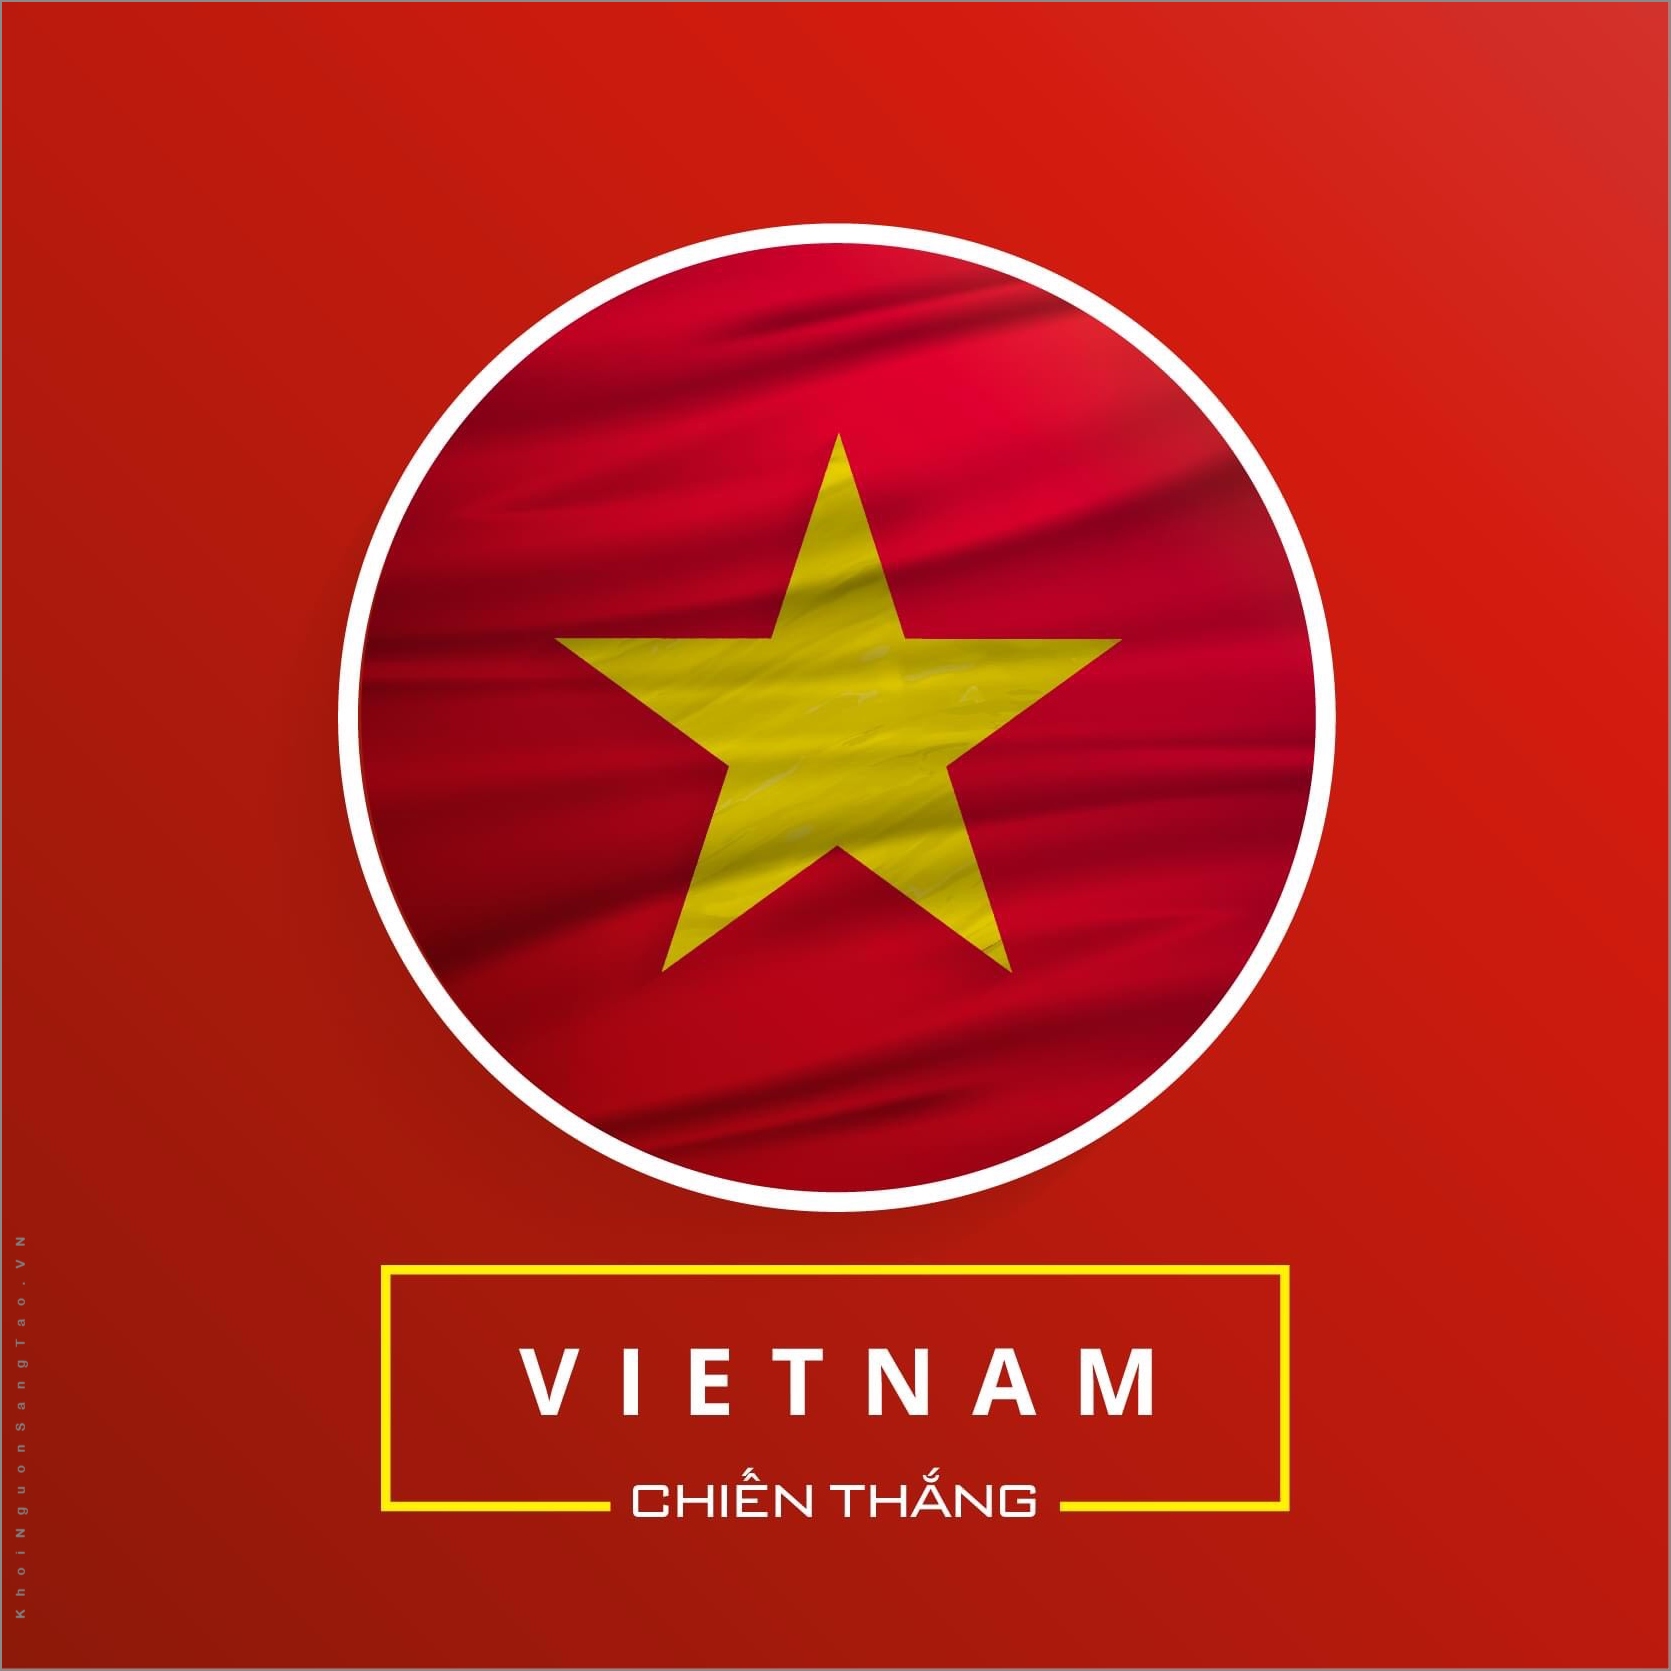 63 Hình Ảnh Avatar Việt Nam TÌNH YÊU TỔ QUỐC BẤT DIỆT